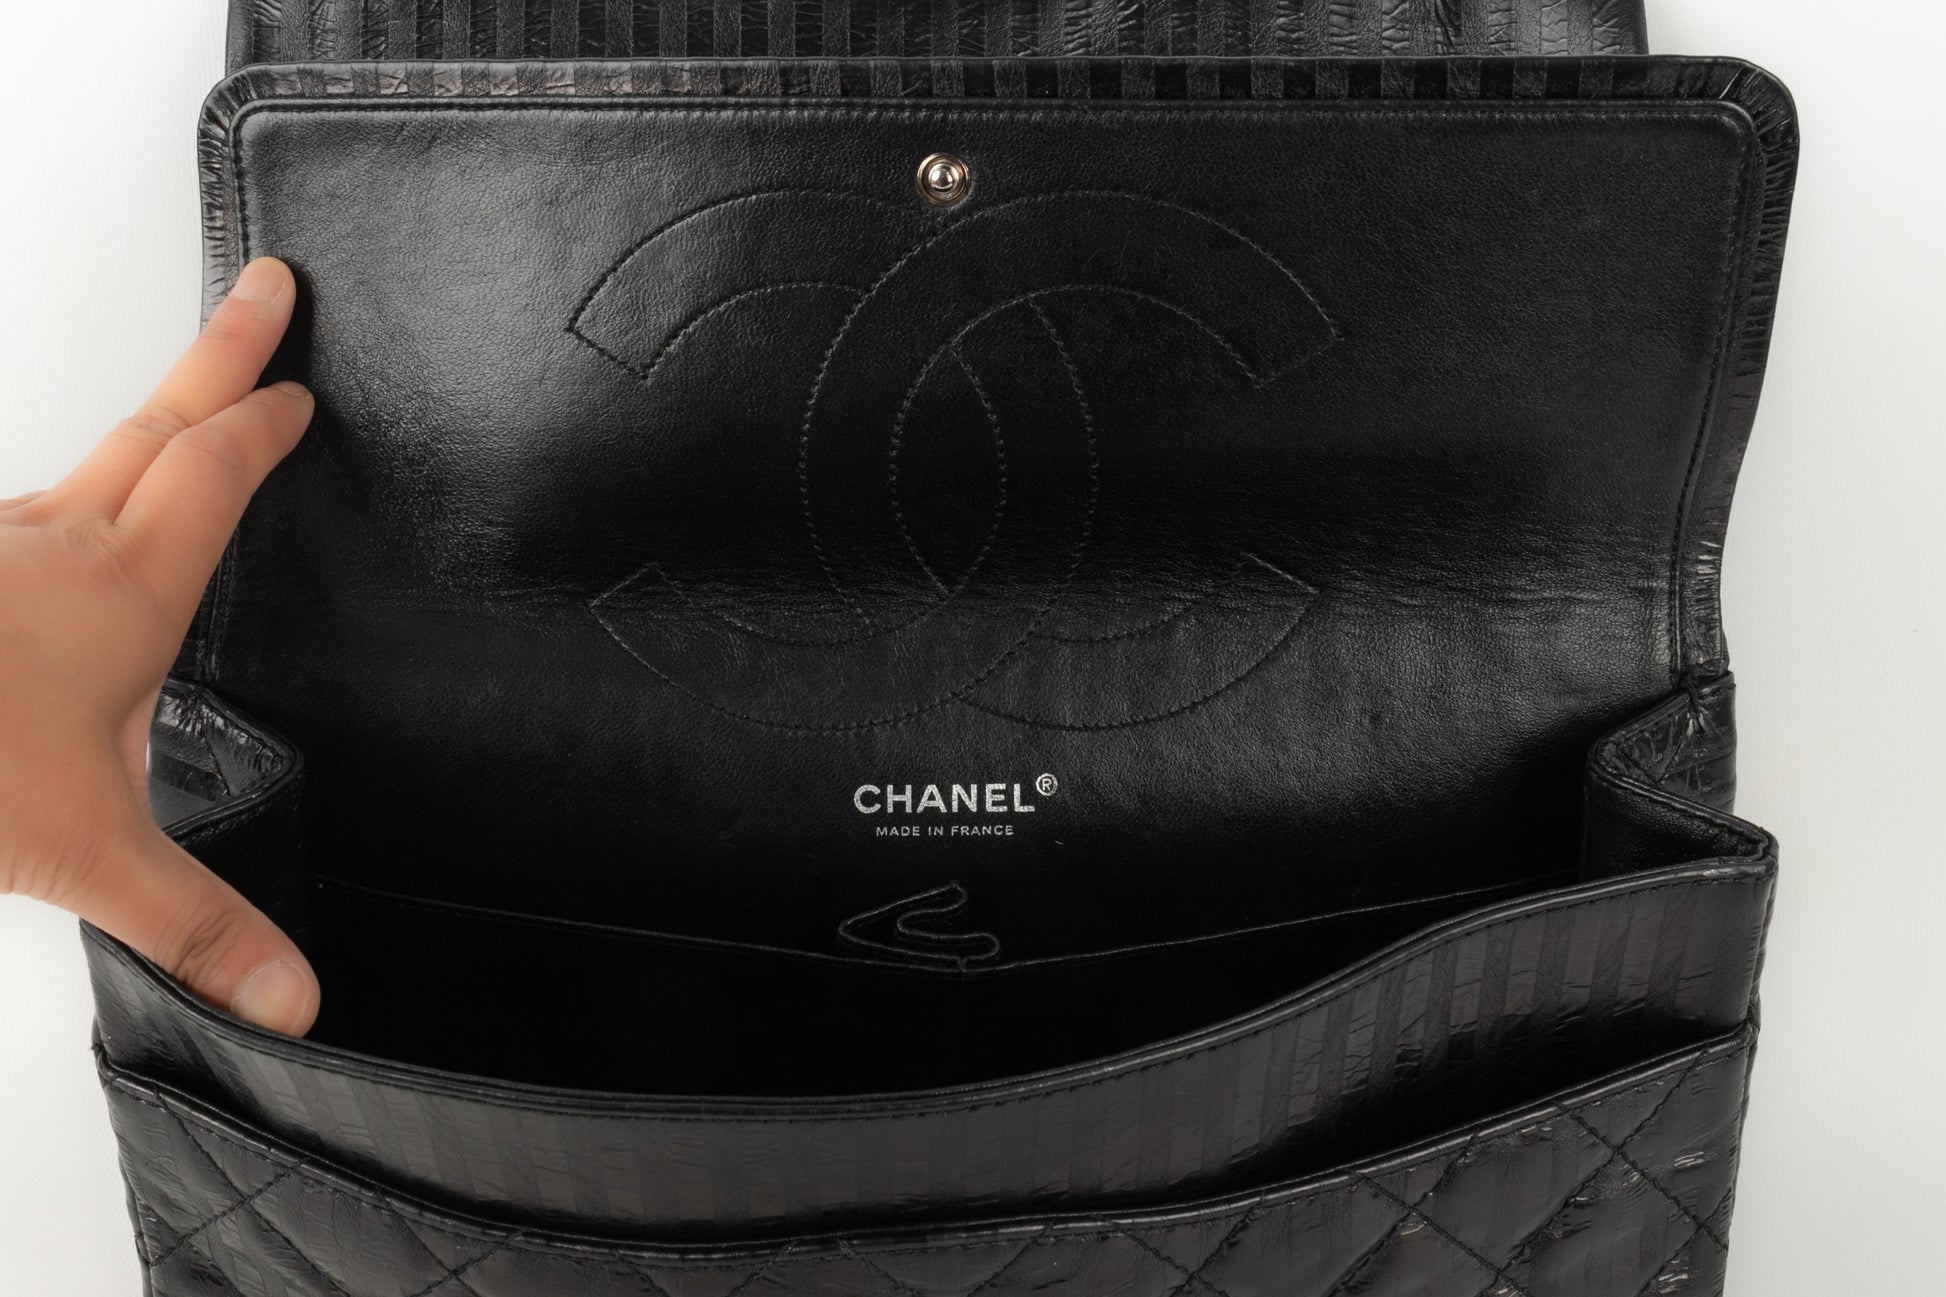 Sac 2.55 Chanel 2008/2009